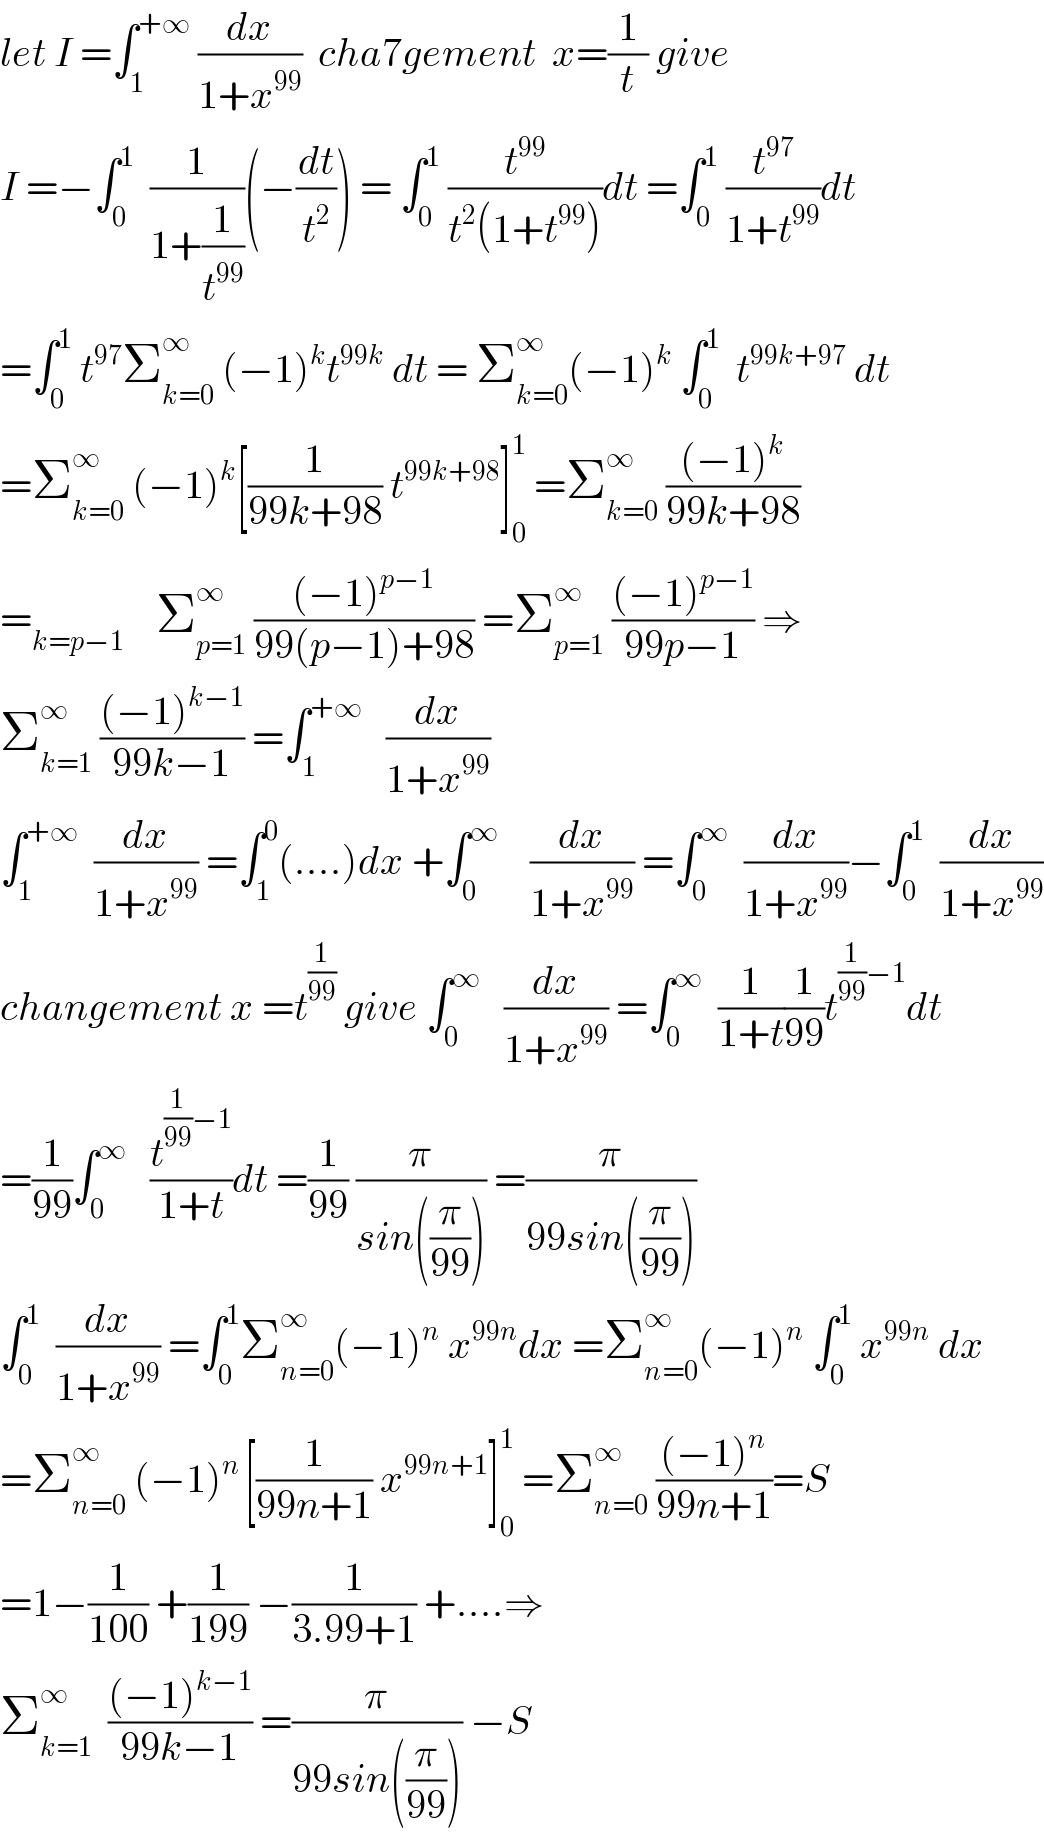 let I =∫_1 ^(+∞)  (dx/(1+x^(99) ))  cha7gement  x=(1/t) give   I =−∫_0 ^1   (1/(1+(1/t^(99) )))(−(dt/t^2 )) = ∫_0 ^1  (t^(99) /(t^2 (1+t^(99) )))dt =∫_0 ^1  (t^(97) /(1+t^(99) ))dt  =∫_0 ^1  t^(97) Σ_(k=0) ^∞  (−1)^k t^(99k)  dt = Σ_(k=0) ^∞ (−1)^k  ∫_0 ^1   t^(99k+97)  dt  =Σ_(k=0) ^∞  (−1)^k [(1/(99k+98)) t^(99k+98) ]_0 ^1  =Σ_(k=0) ^∞  (((−1)^k )/(99k+98))  =_(k=p−1)     Σ_(p=1) ^∞  (((−1)^(p−1) )/(99(p−1)+98)) =Σ_(p=1) ^∞  (((−1)^(p−1) )/(99p−1)) ⇒  Σ_(k=1) ^∞  (((−1)^(k−1) )/(99k−1)) =∫_1 ^(+∞)    (dx/(1+x^(99) ))  ∫_1 ^(+∞)   (dx/(1+x^(99) )) =∫_1 ^0 (....)dx +∫_0 ^∞     (dx/(1+x^(99) )) =∫_0 ^∞   (dx/(1+x^(99) ))−∫_0 ^1   (dx/(1+x^(99) ))  changement x =t^(1/(99))  give ∫_0 ^∞    (dx/(1+x^(99) )) =∫_0 ^∞   (1/(1+t))(1/(99))t^((1/(99))−1) dt  =(1/(99))∫_0 ^∞    (t^((1/(99))−1) /(1+t))dt =(1/(99)) (π/(sin((π/(99))))) =(π/(99sin((π/(99)))))  ∫_0 ^1   (dx/(1+x^(99) )) =∫_0 ^1 Σ_(n=0) ^∞ (−1)^n  x^(99n) dx =Σ_(n=0) ^∞ (−1)^n  ∫_0 ^1  x^(99n)  dx  =Σ_(n=0) ^∞  (−1)^(n ) [(1/(99n+1)) x^(99n+1) ]_0 ^1  =Σ_(n=0) ^∞  (((−1)^n )/(99n+1))=S  =1−(1/(100)) +(1/(199)) −(1/(3.99+1)) +....⇒  Σ_(k=1) ^∞   (((−1)^(k−1) )/(99k−1)) =(π/(99sin((π/(99))))) −S    